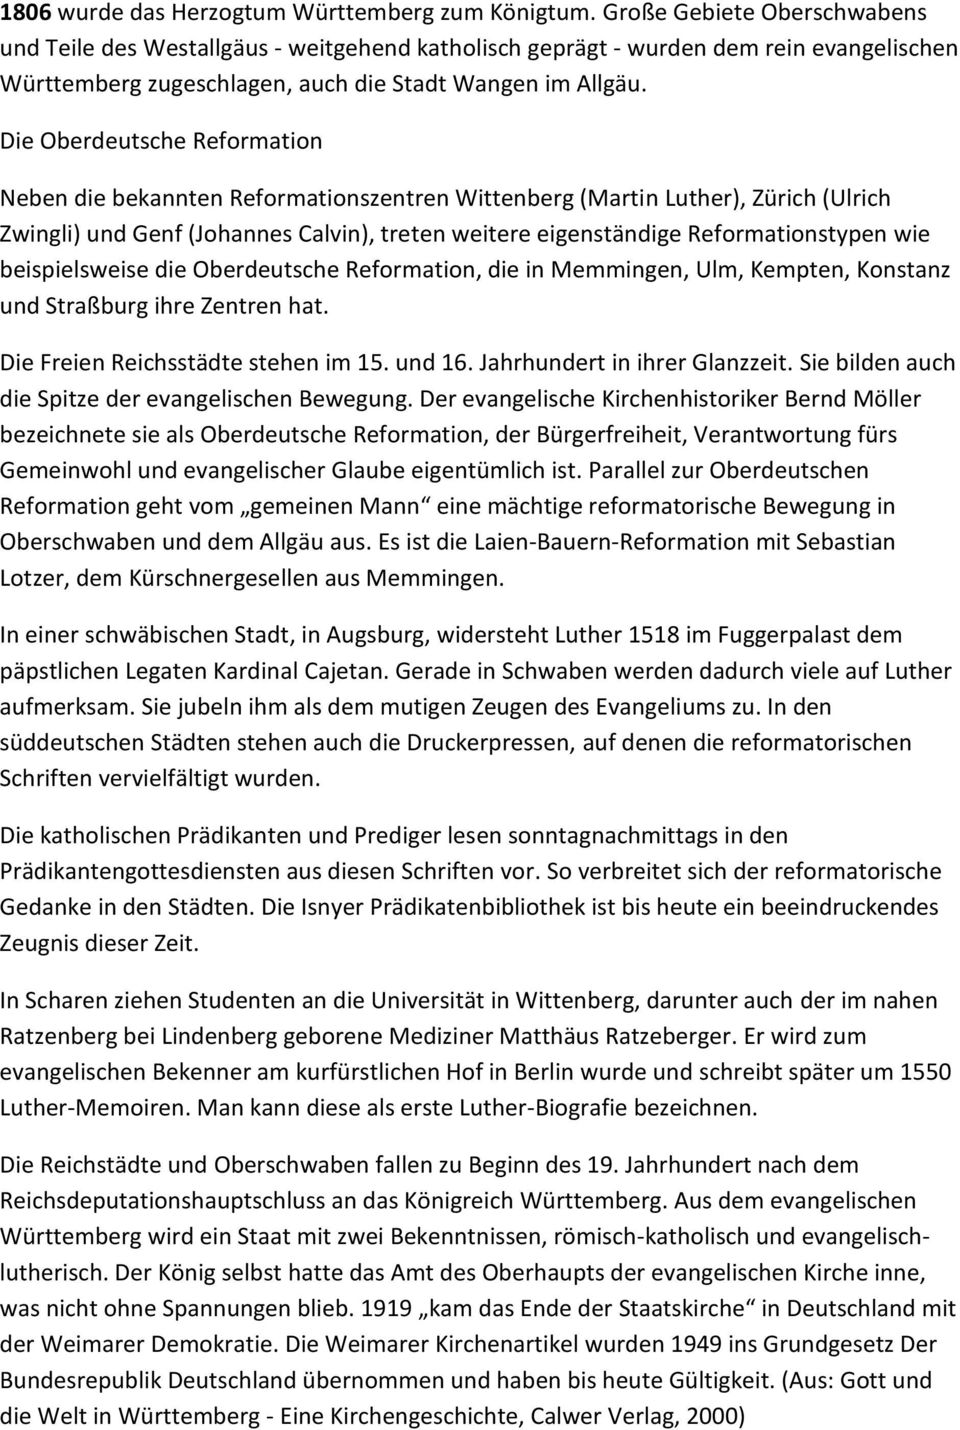 Die Oberdeutsche Reformation Neben die bekannten Reformationszentren Wittenberg (Martin Luther), Zürich (Ulrich Zwingli) und Genf (Johannes Calvin), treten weitere eigenständige Reformationstypen wie